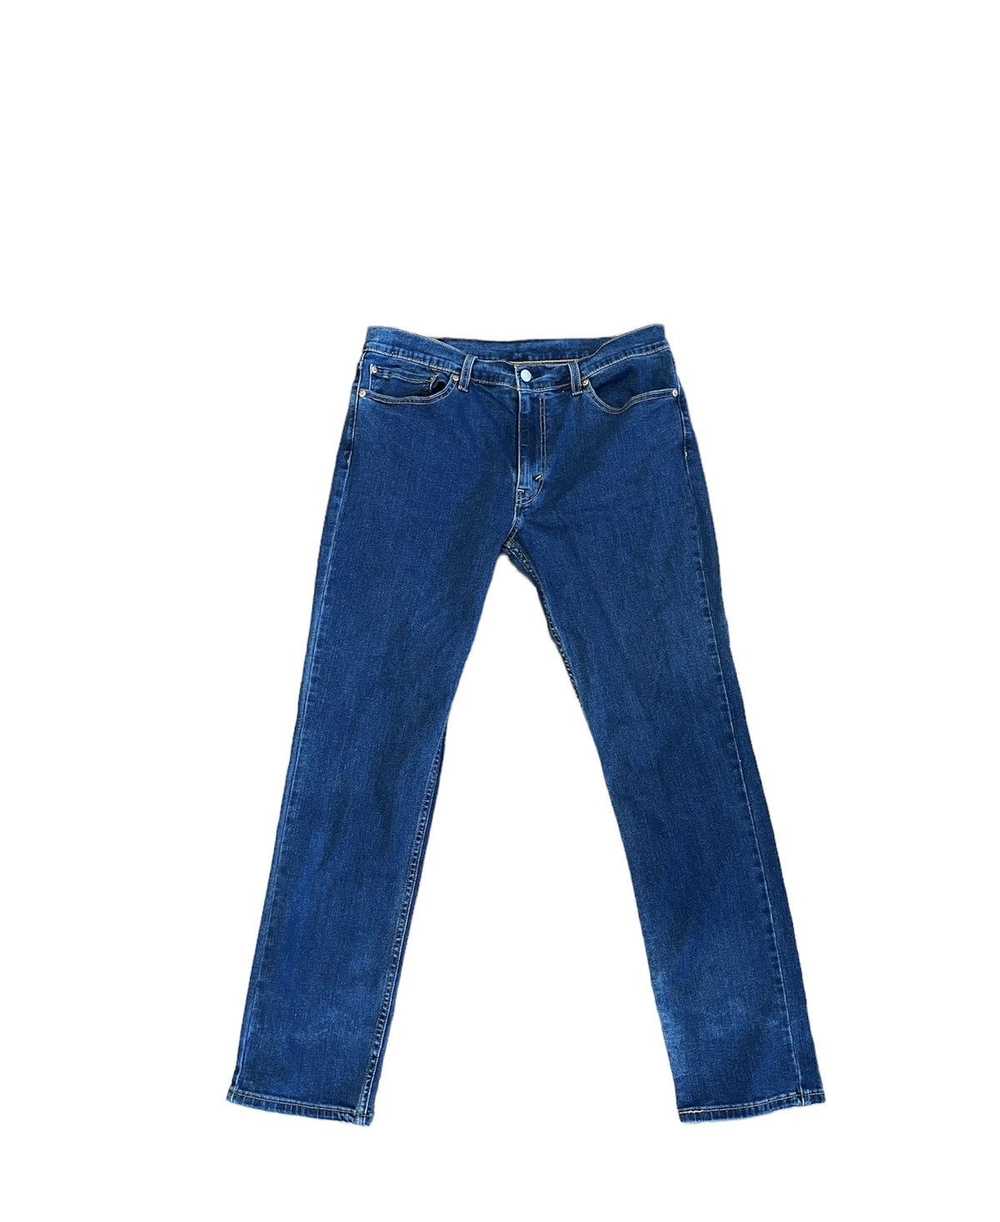 Levi's Levis 511 Blue Jeans - image 1